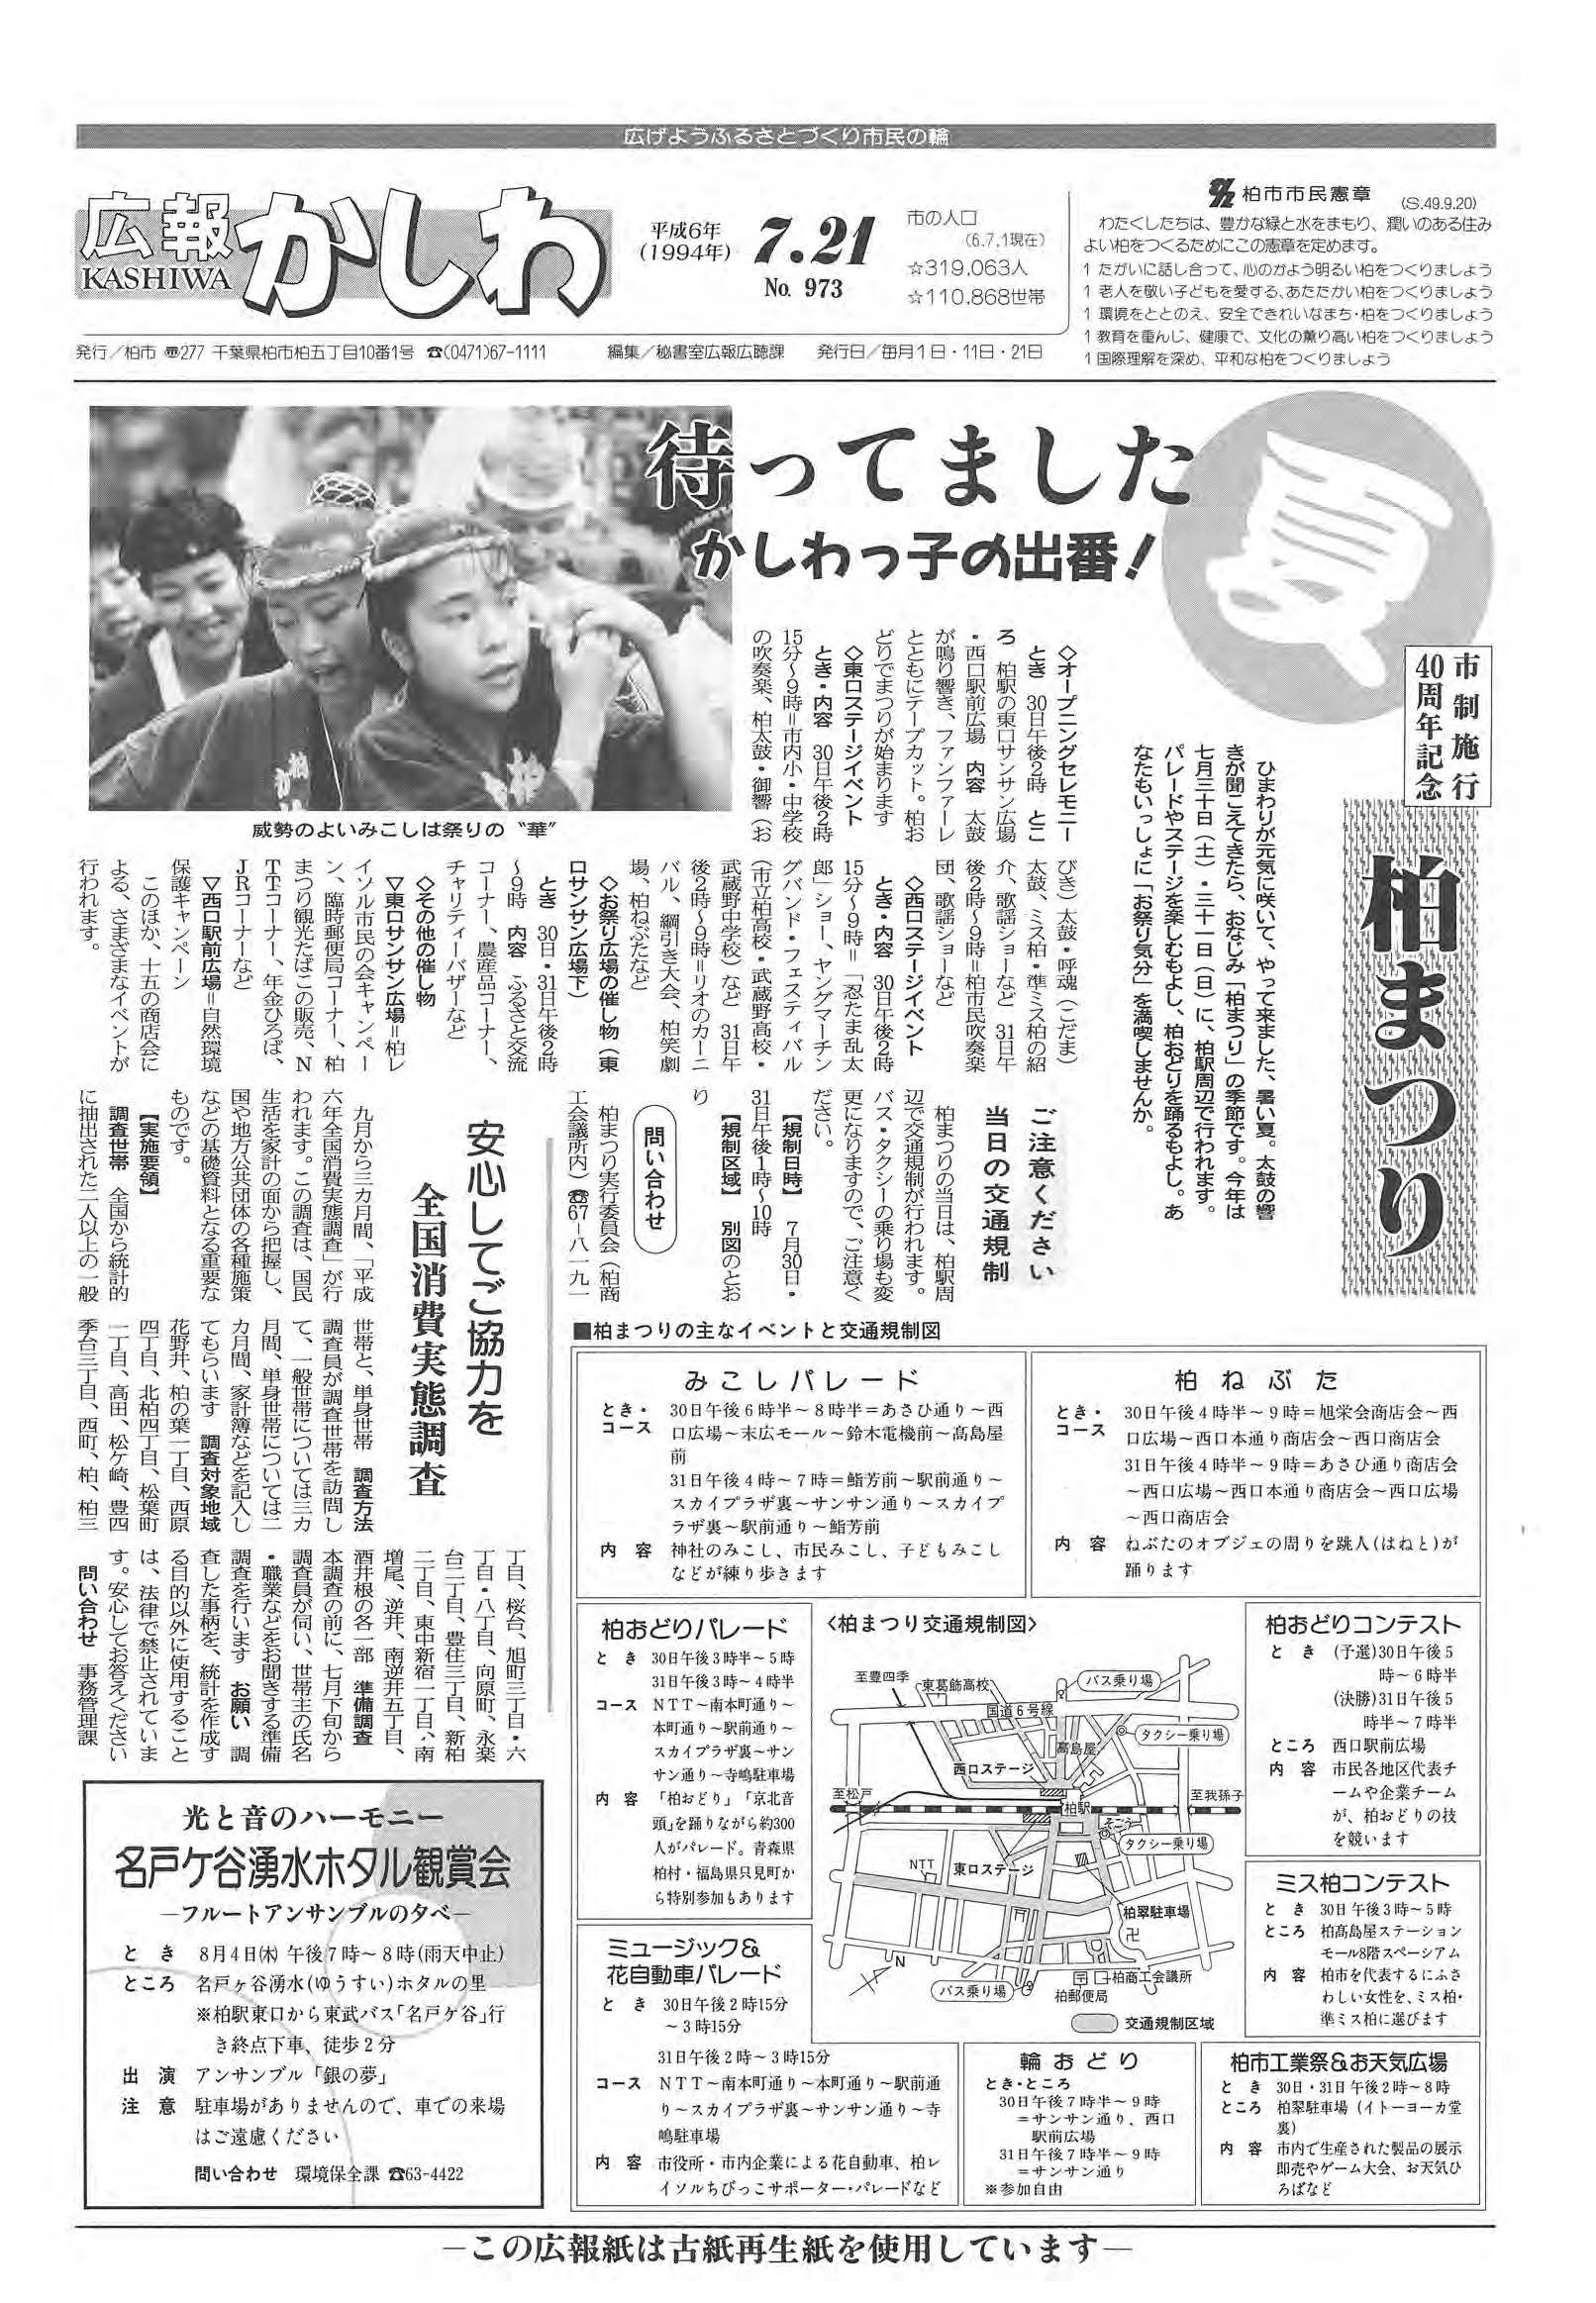 広報かしわ　平成6年7月21日発行　973号